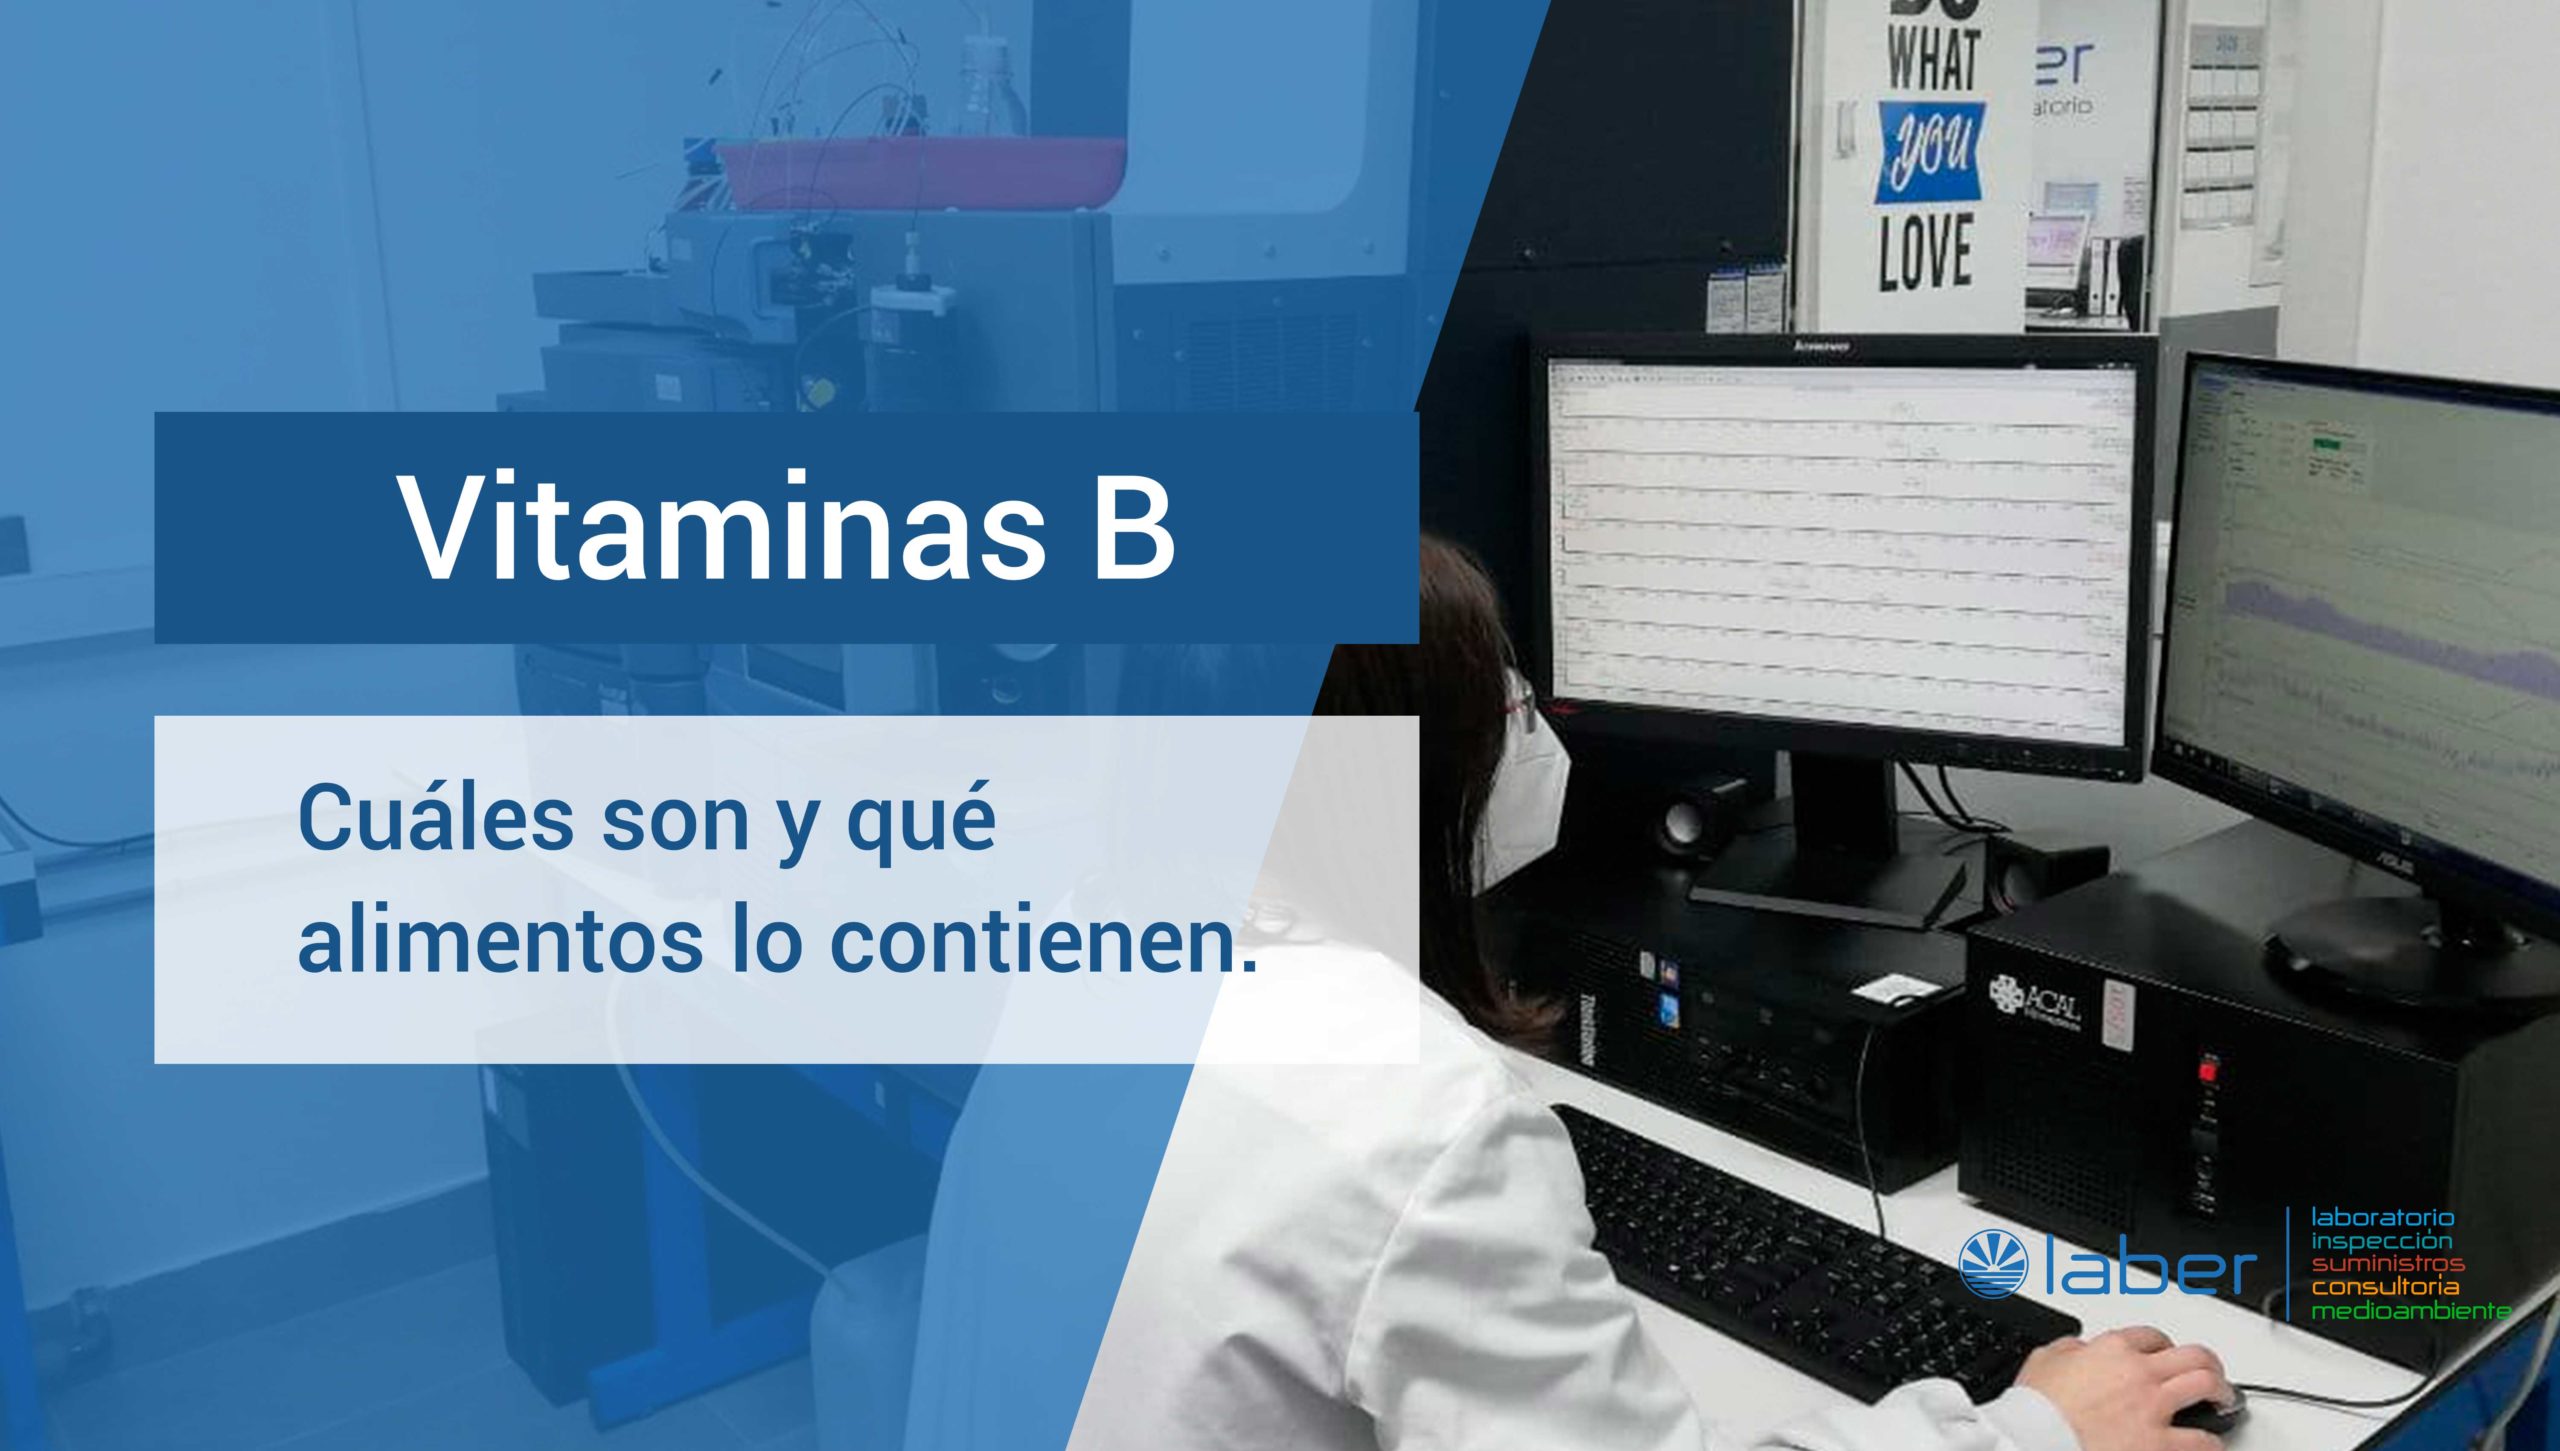 vitaminasB_qtof-laboratorio-corporacionlaber